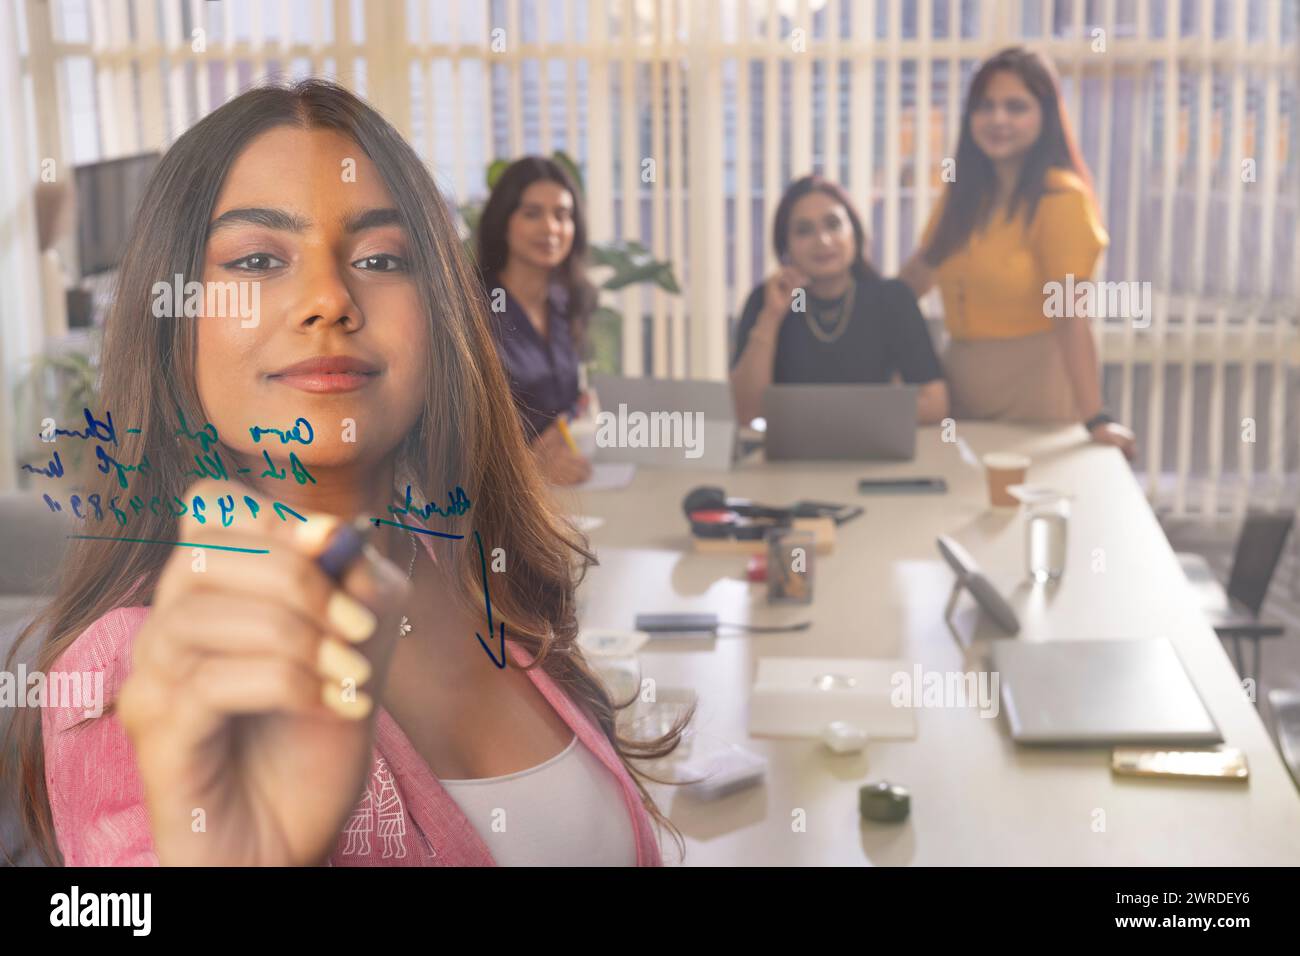 Geschäftsfrau, die auf Glas schreibt, während sie im Konferenzraum eine Geschäftspräsentation hält Stockfoto